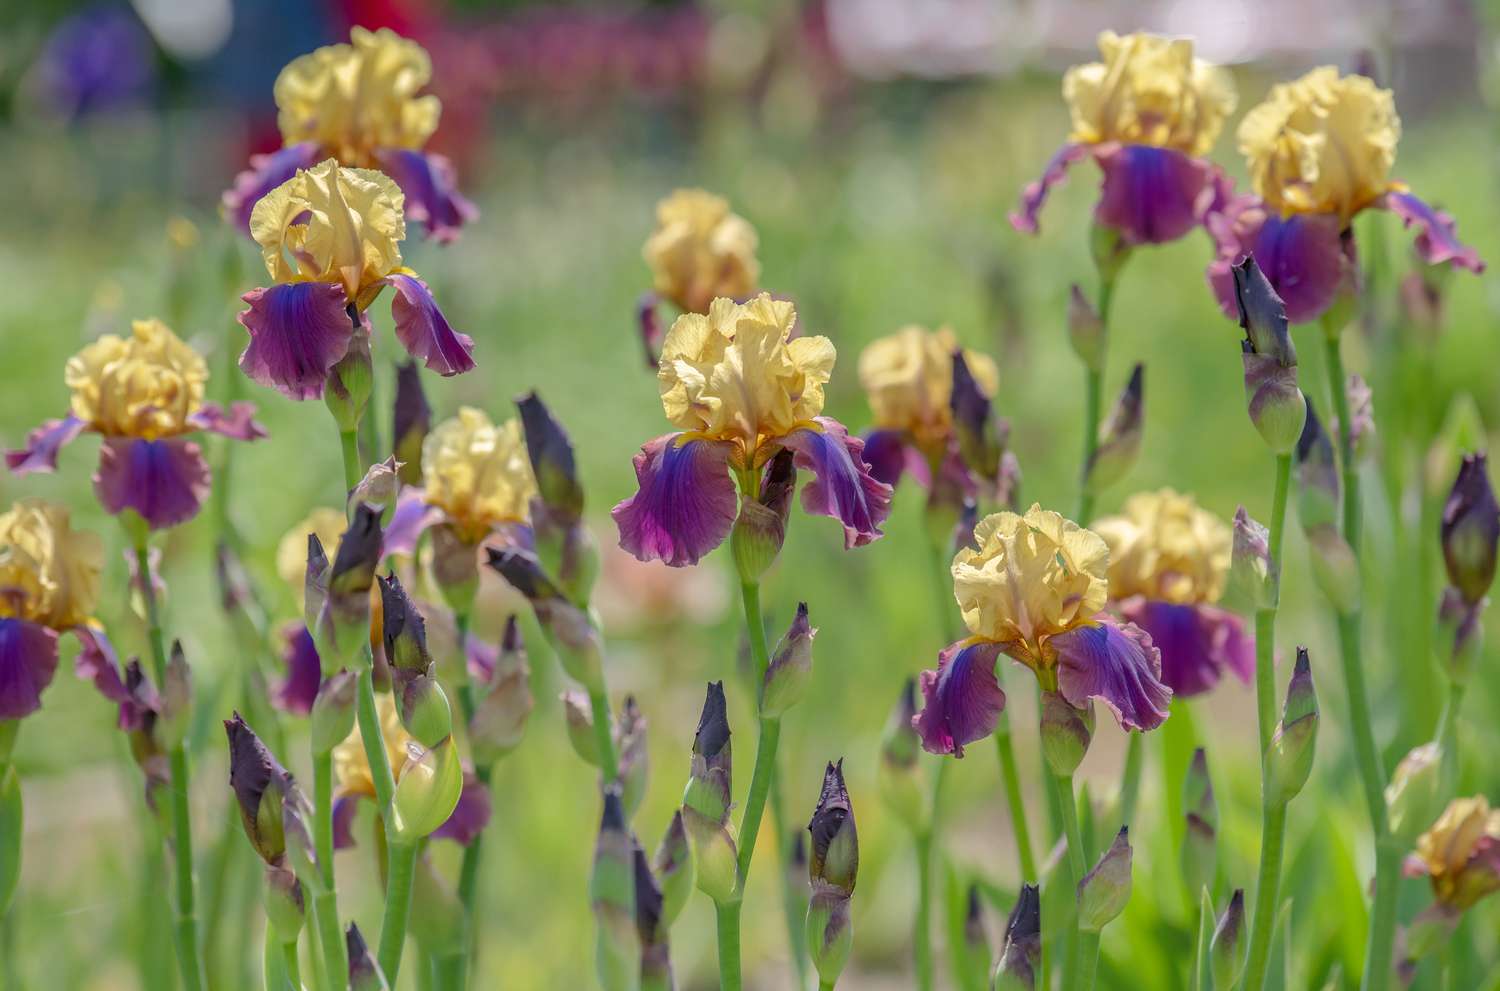 Irisblüten mit gelben Standard- und violetten Herbstblättern und Knospen an hohen dünnen Stängeln